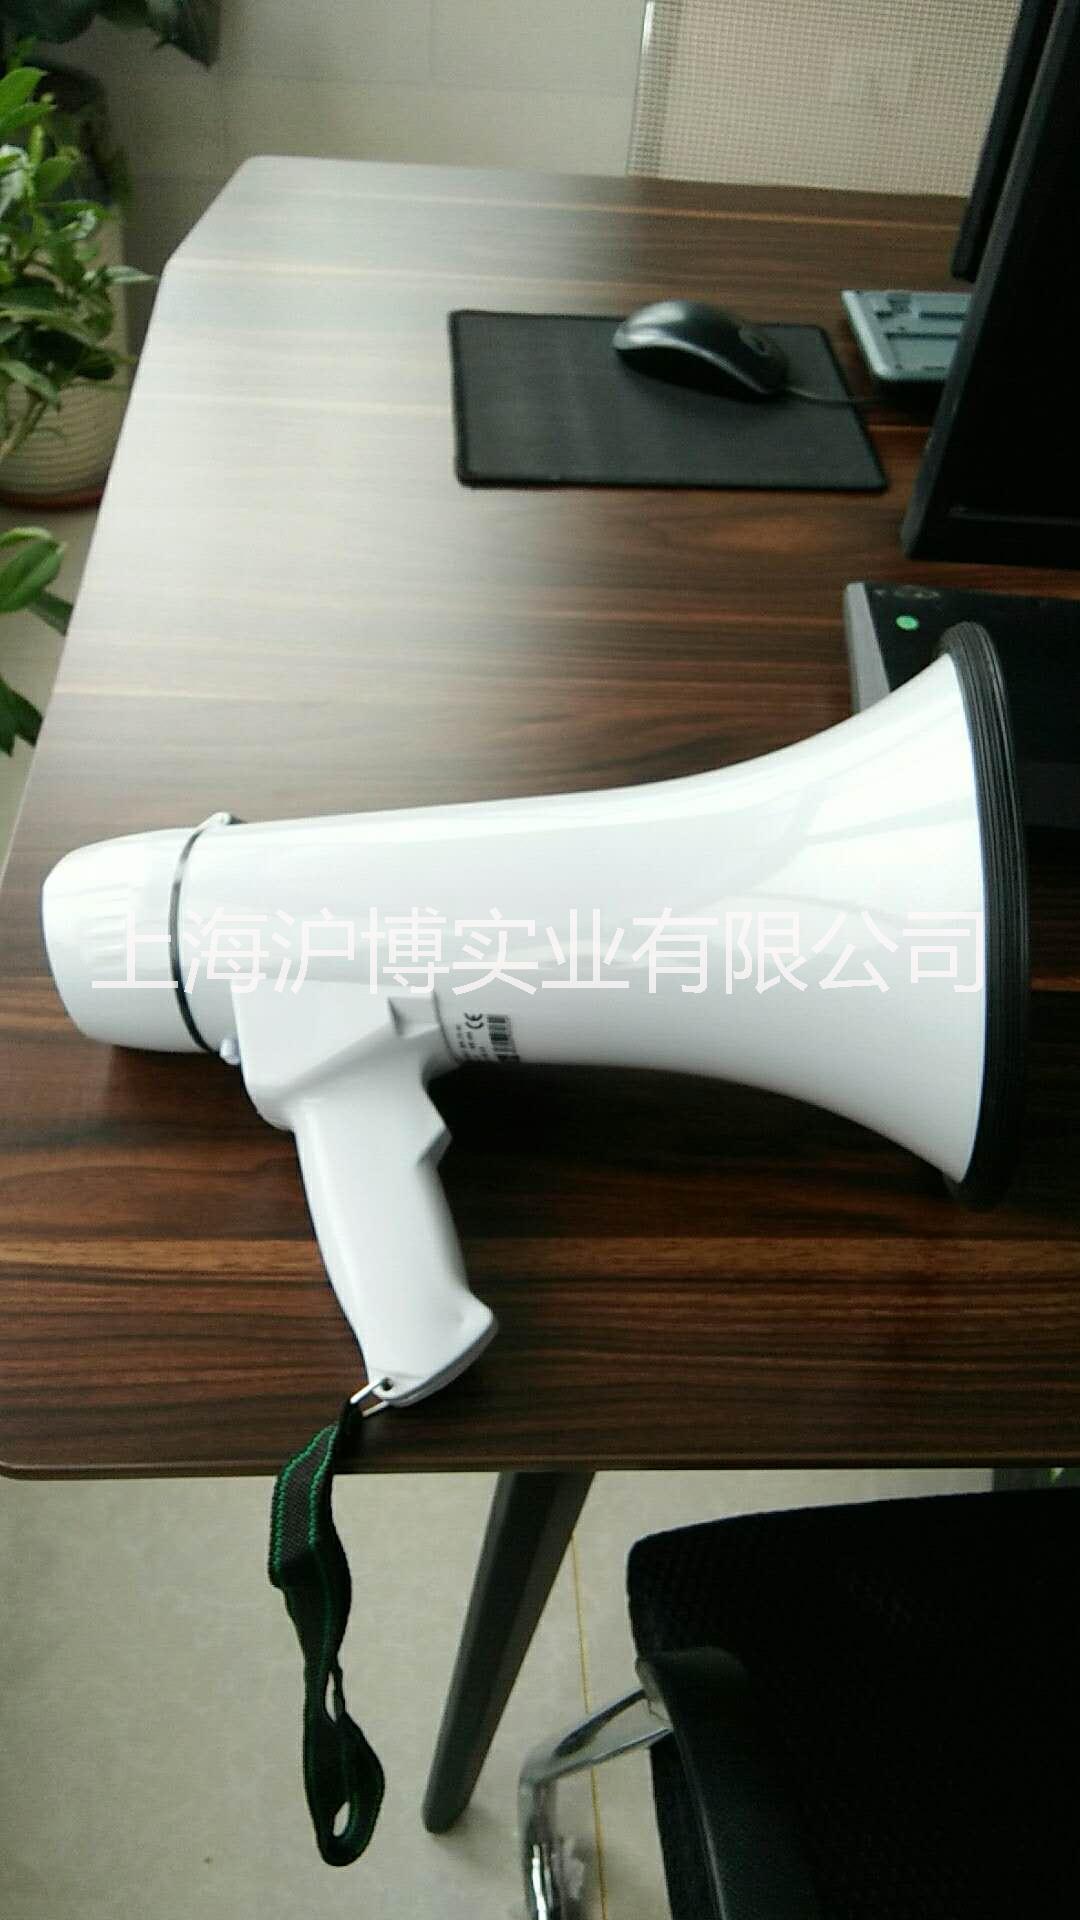 上海市手持扩音器厂家手持扩音器|手持扩音器优质供应商|手持扩音器厂家直销价格